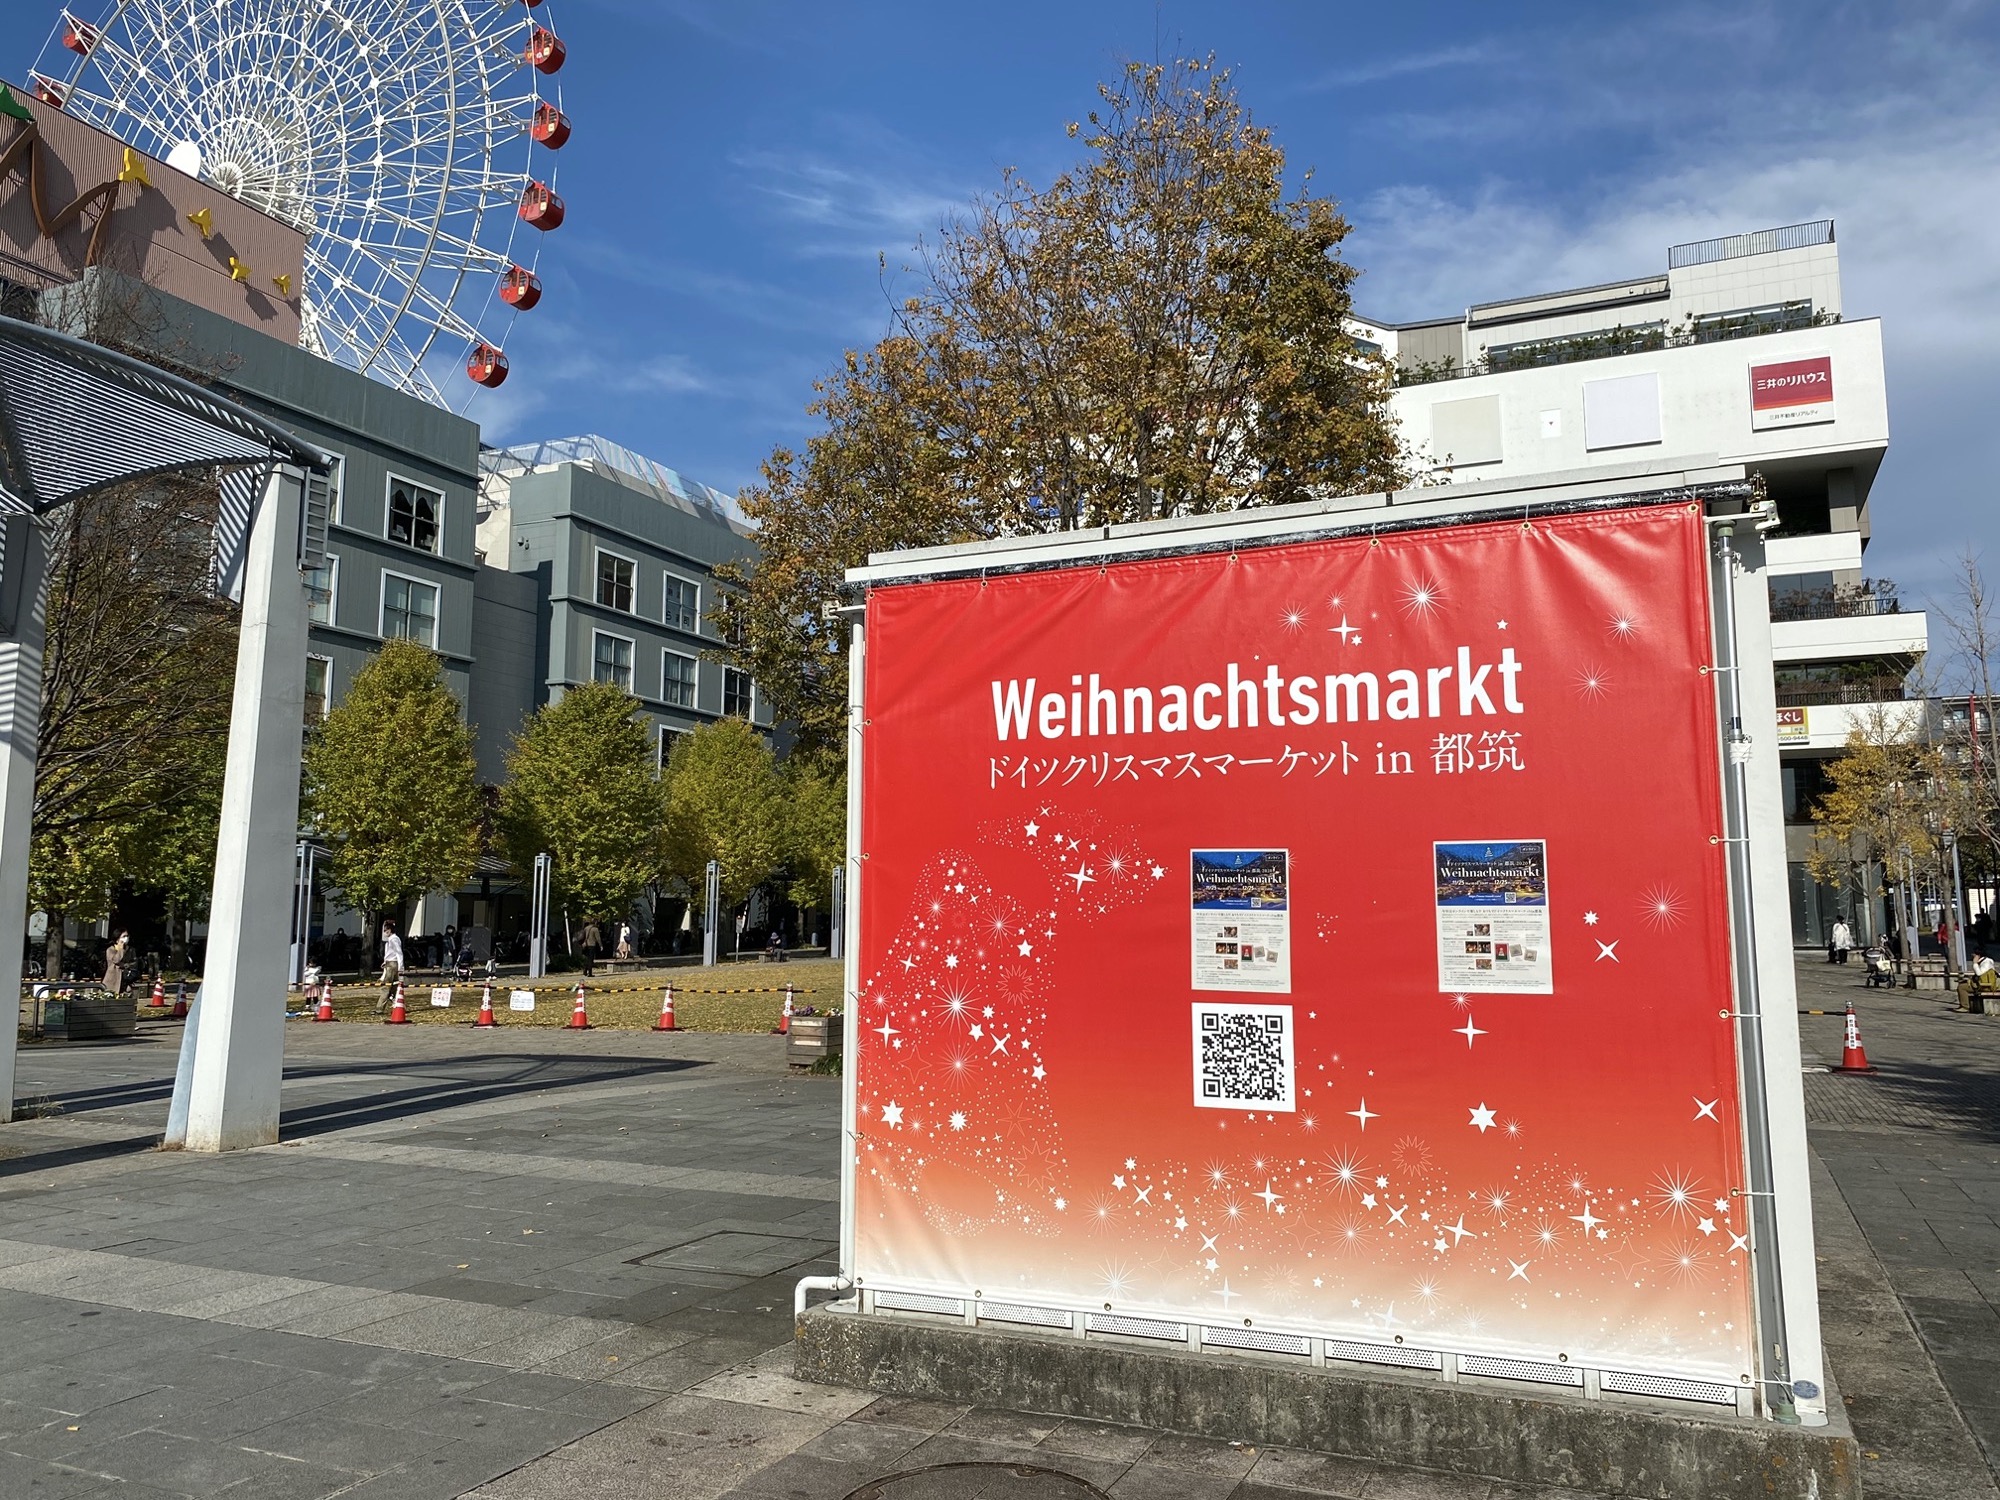 センター北のドイツクリスマスマーケット 今年はオンラインで開催 無料配布の金属を磨いて作るクリスマスオーナメントも 都筑区 12月25日まで 横浜 湘南で子供と遊ぶ あそびい横浜 湘南